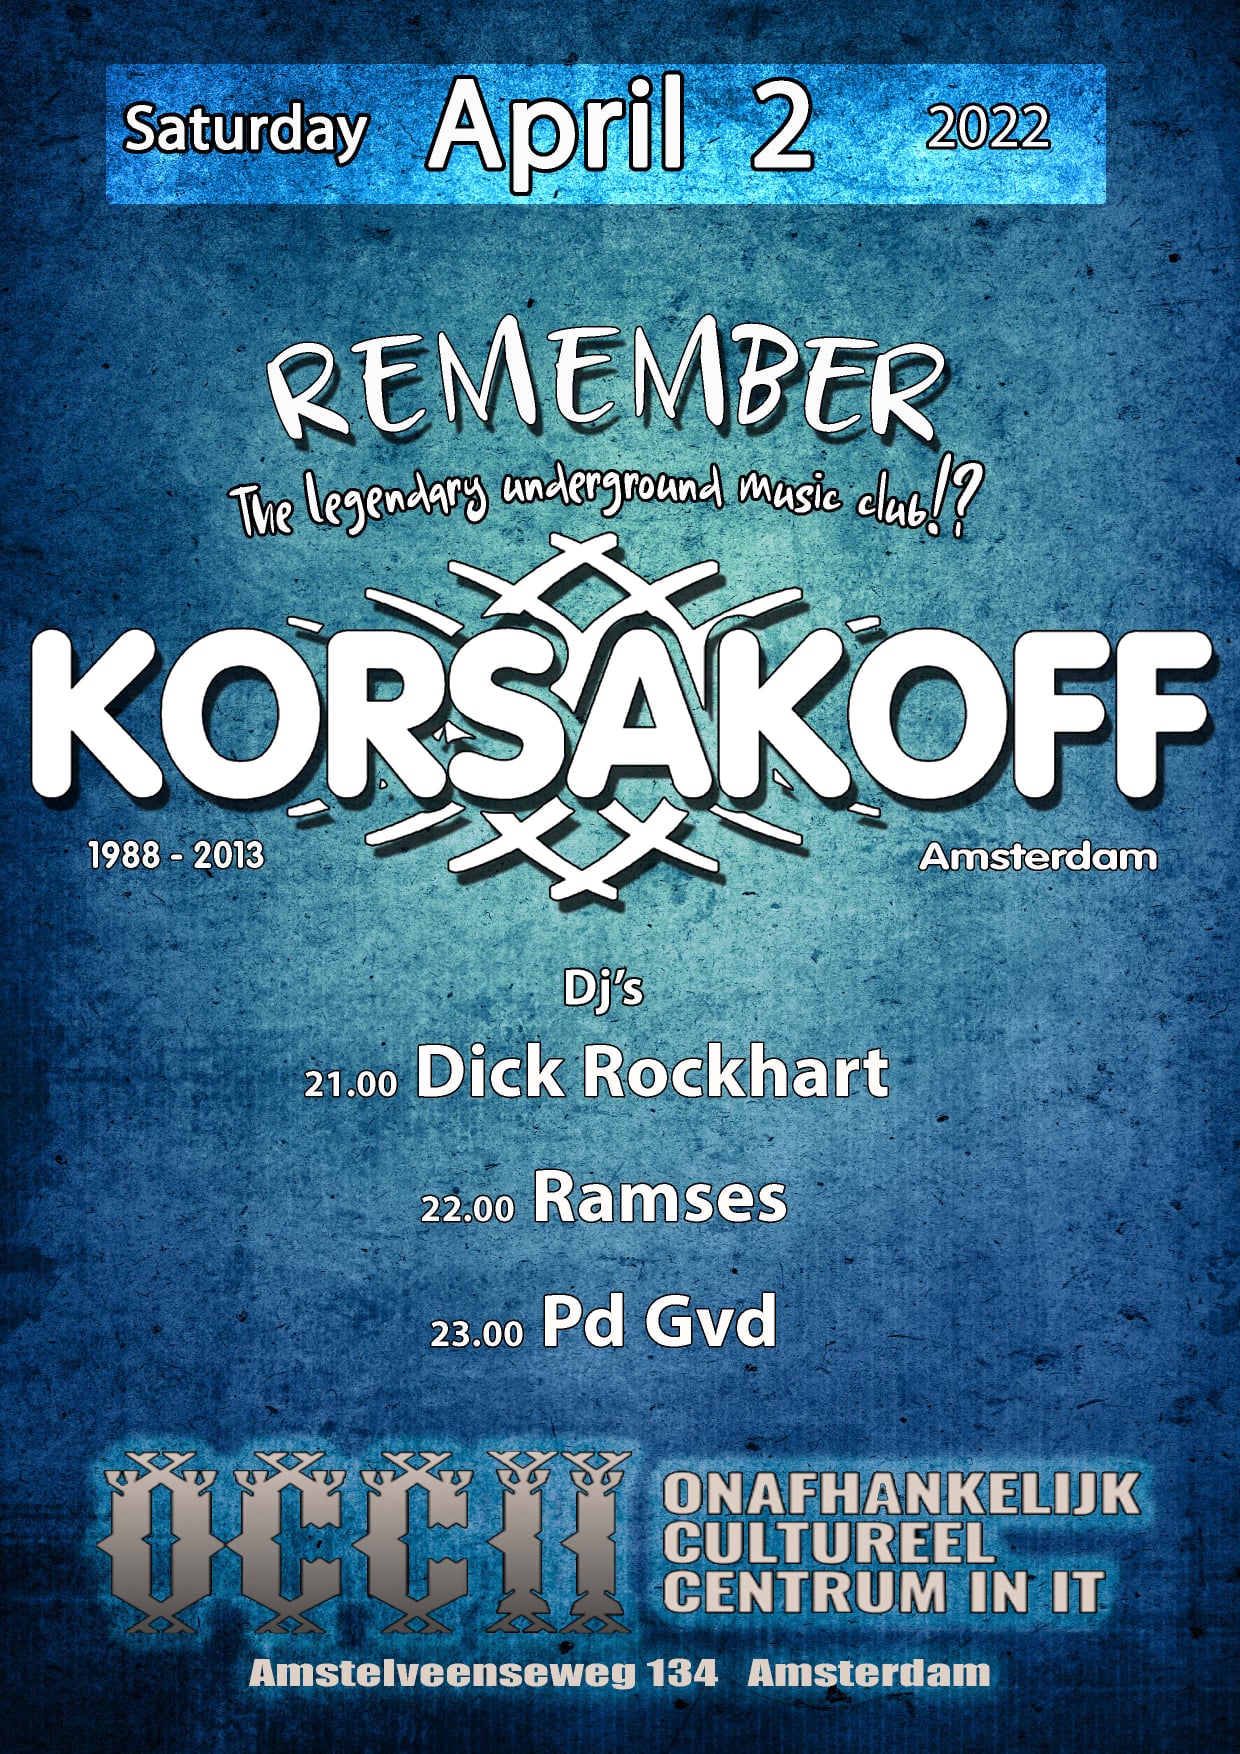 Remember KORSAKOFF!?